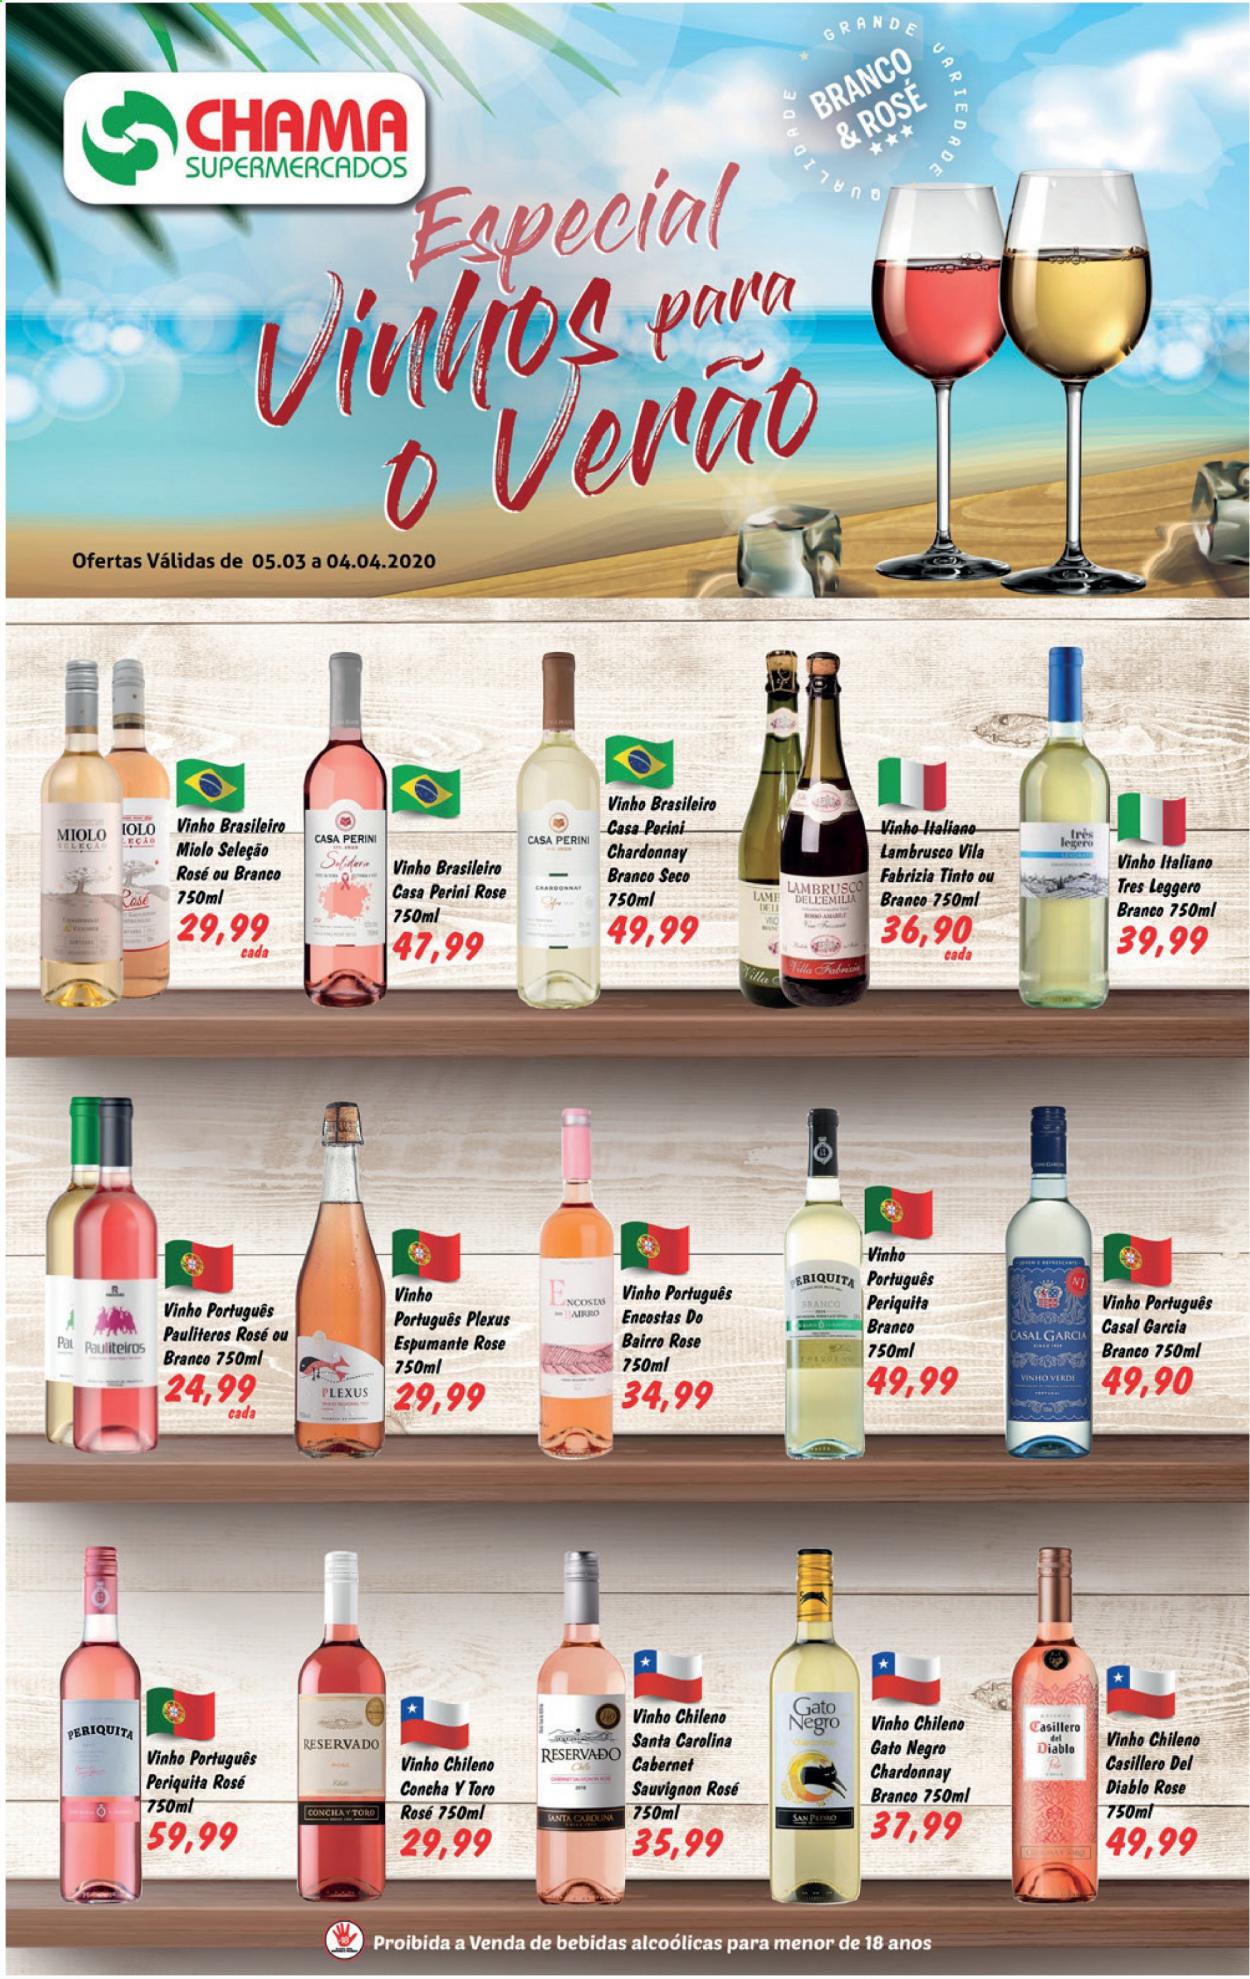 thumbnail - Folheto Chama Supermercados - 05/03/2021 - 04/04/2021 - Produtos em promoção - vinho, espumante, Chardonnay, vinho chileno, vinho italiano, vinho português, cabernet, lambrusco. Página 1.